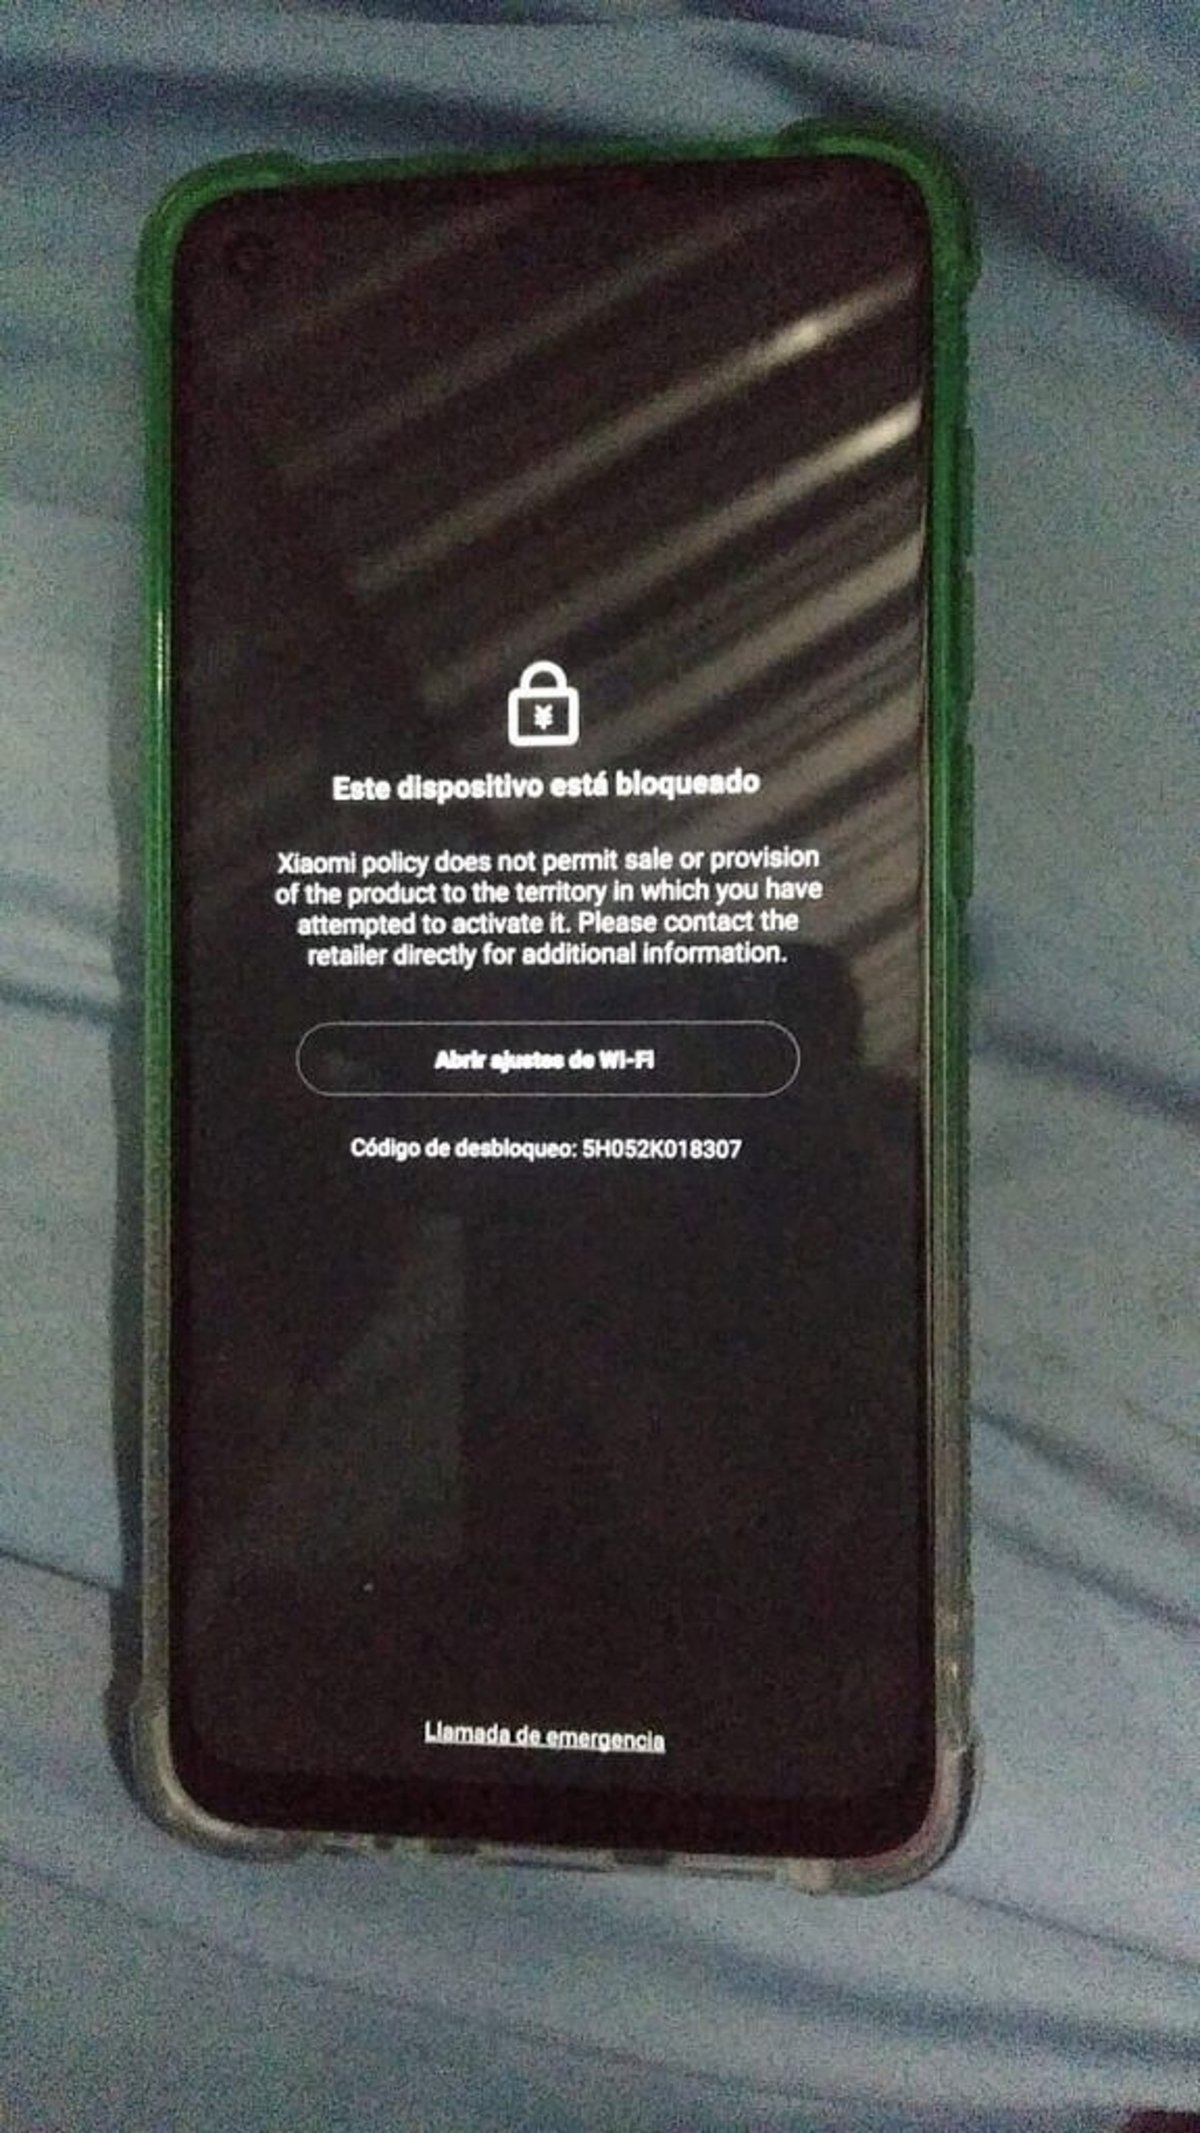 Móvil Xiaomi bloqueado en Cuba